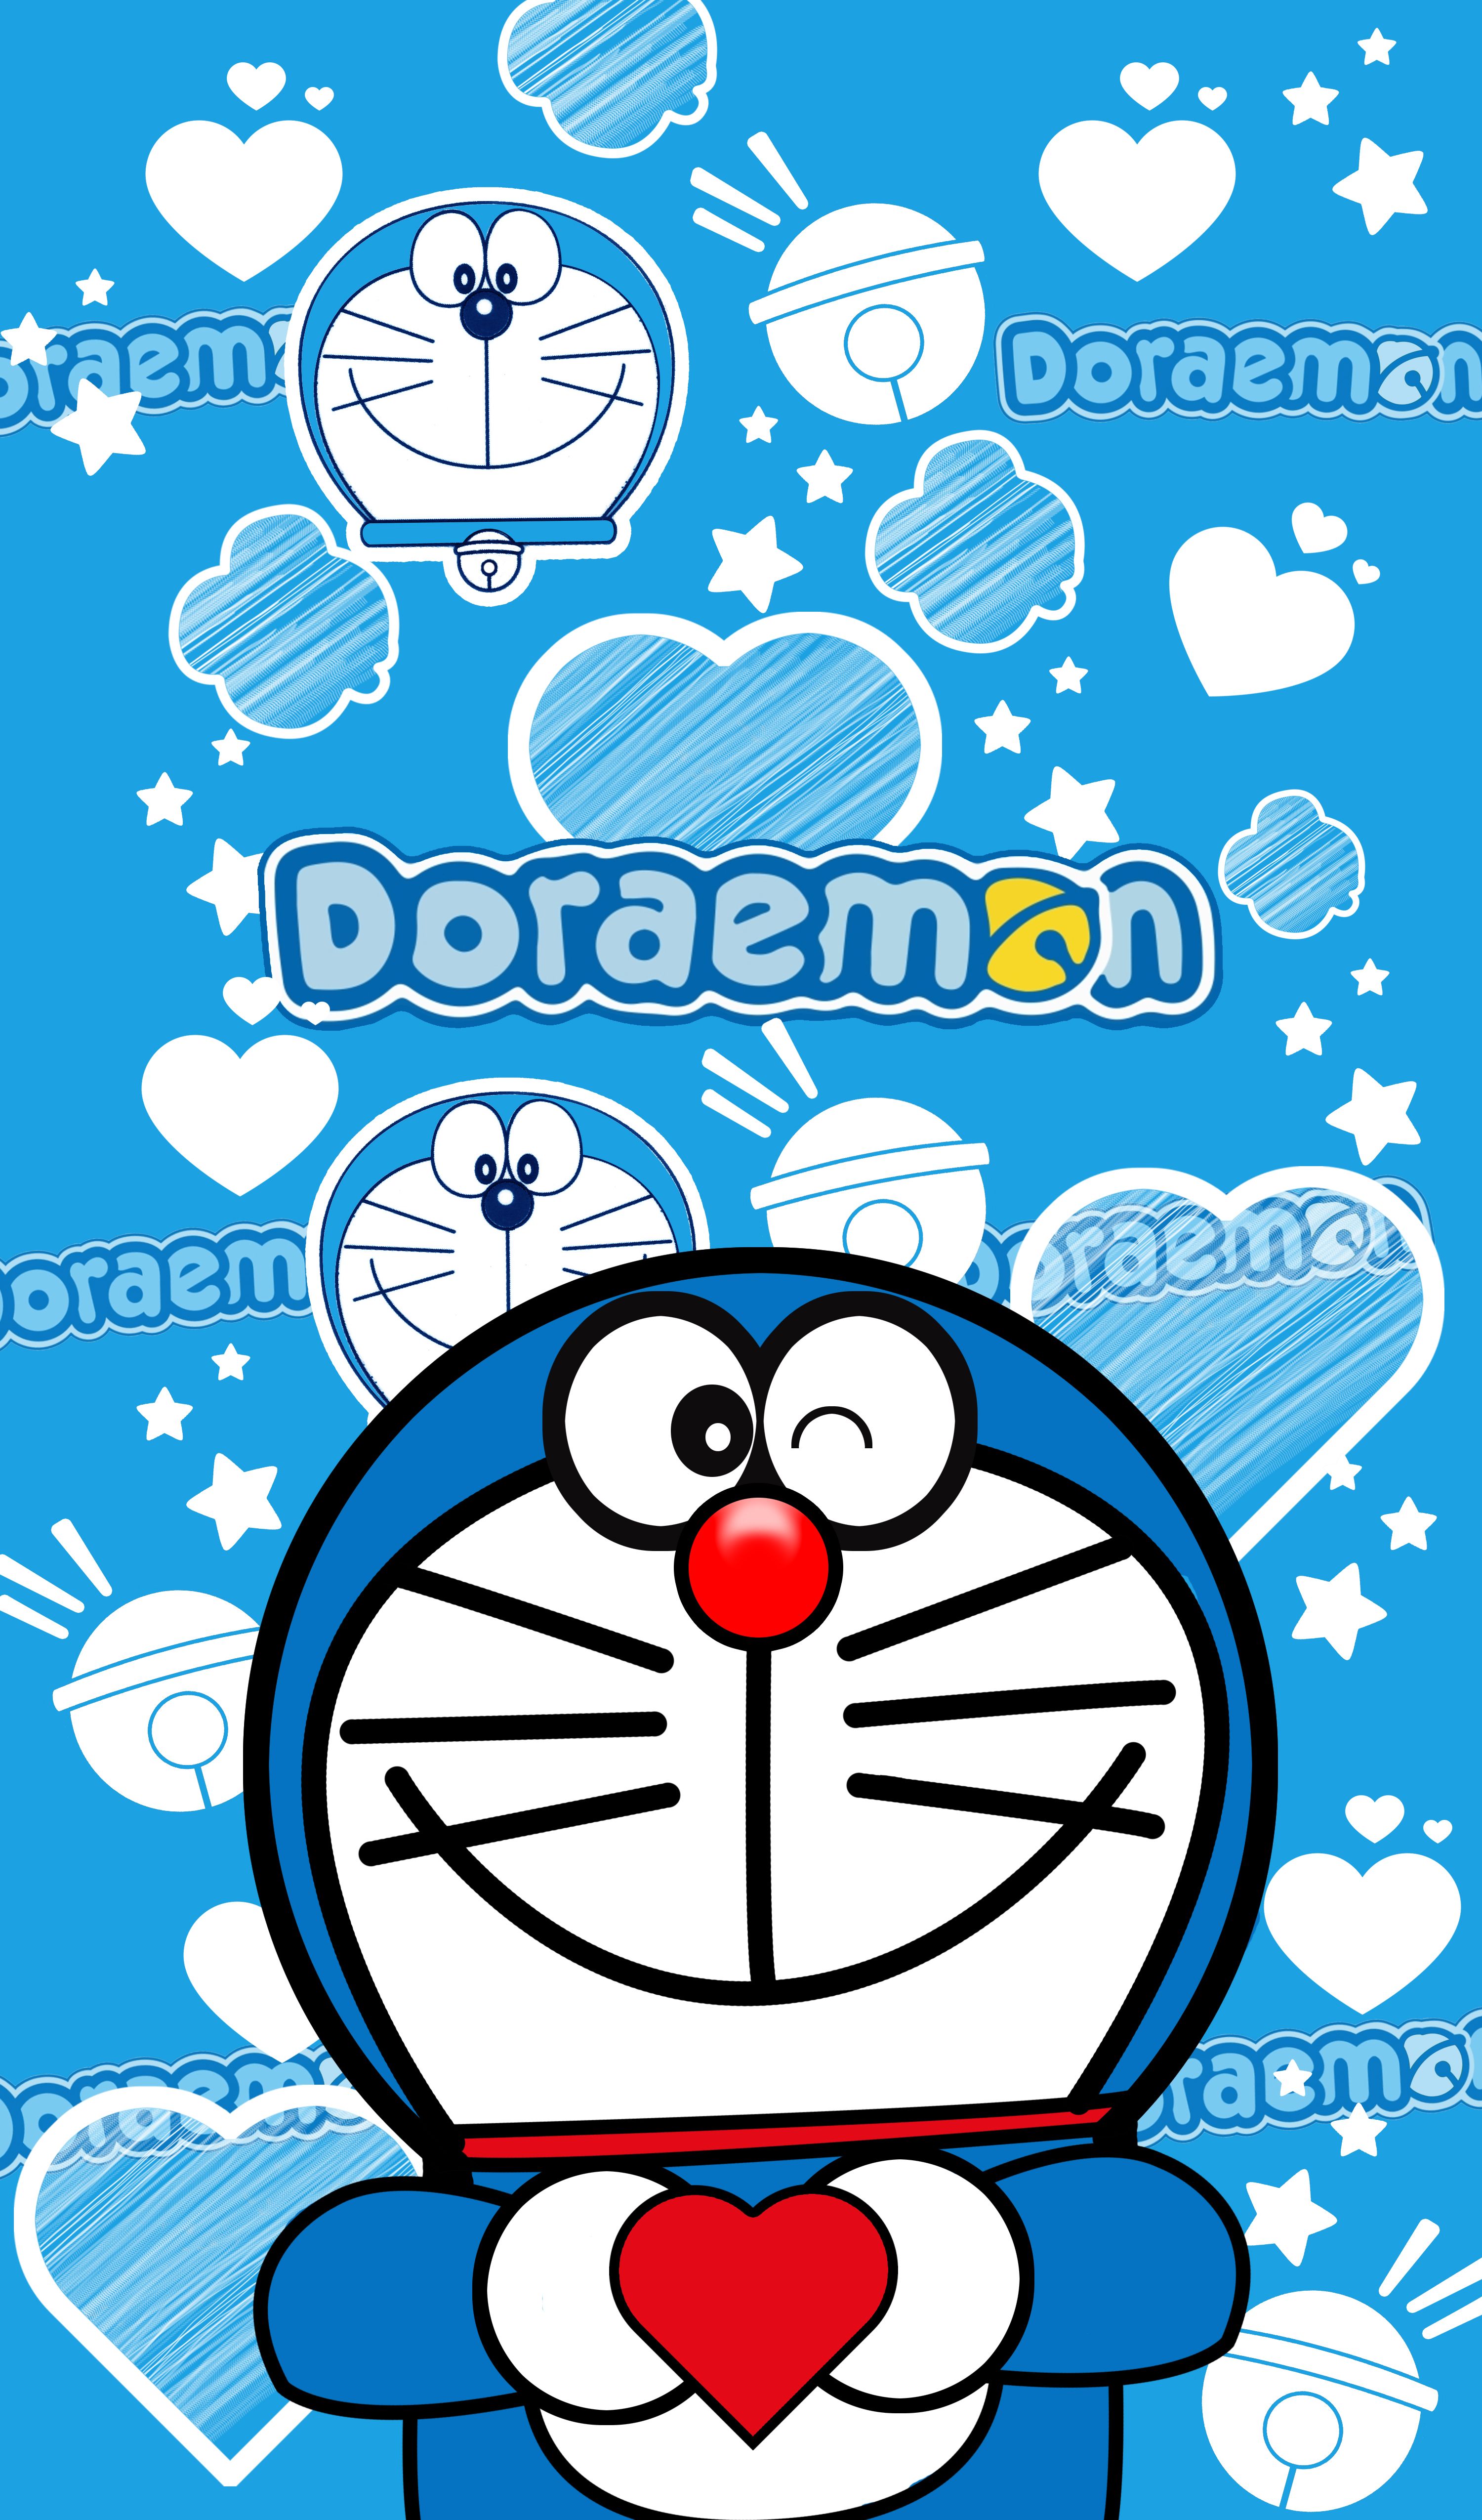 Wallpaper Doraemon Lucu Dan Imut - KibrisPDR